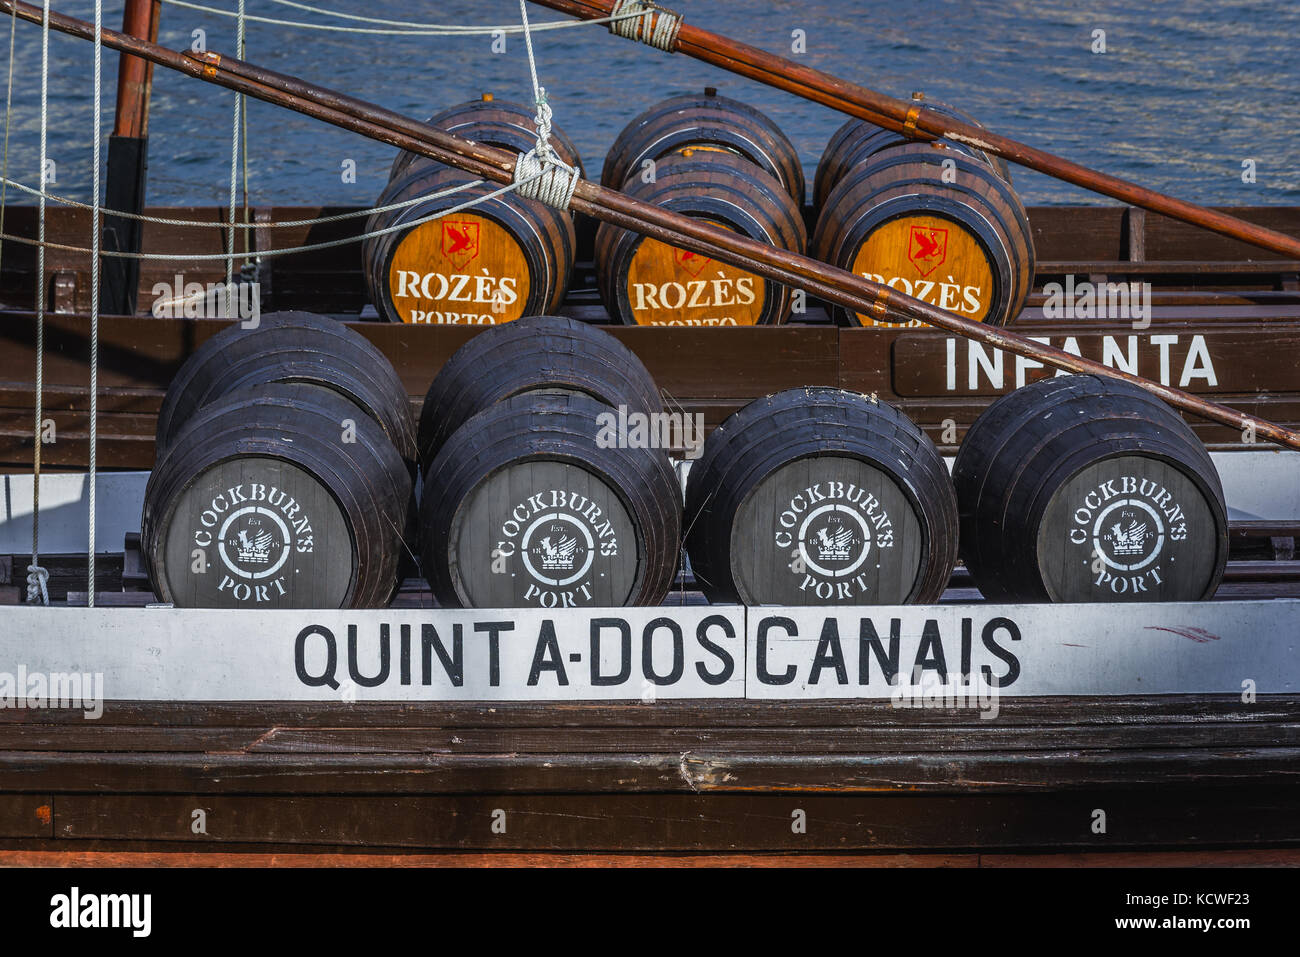 Botti su un porto barche di vino chiamato Rabelo Barche su un fiume Douro nella città di Vila Nova de Gaia. Porto città fiume banca sullo sfondo Foto Stock